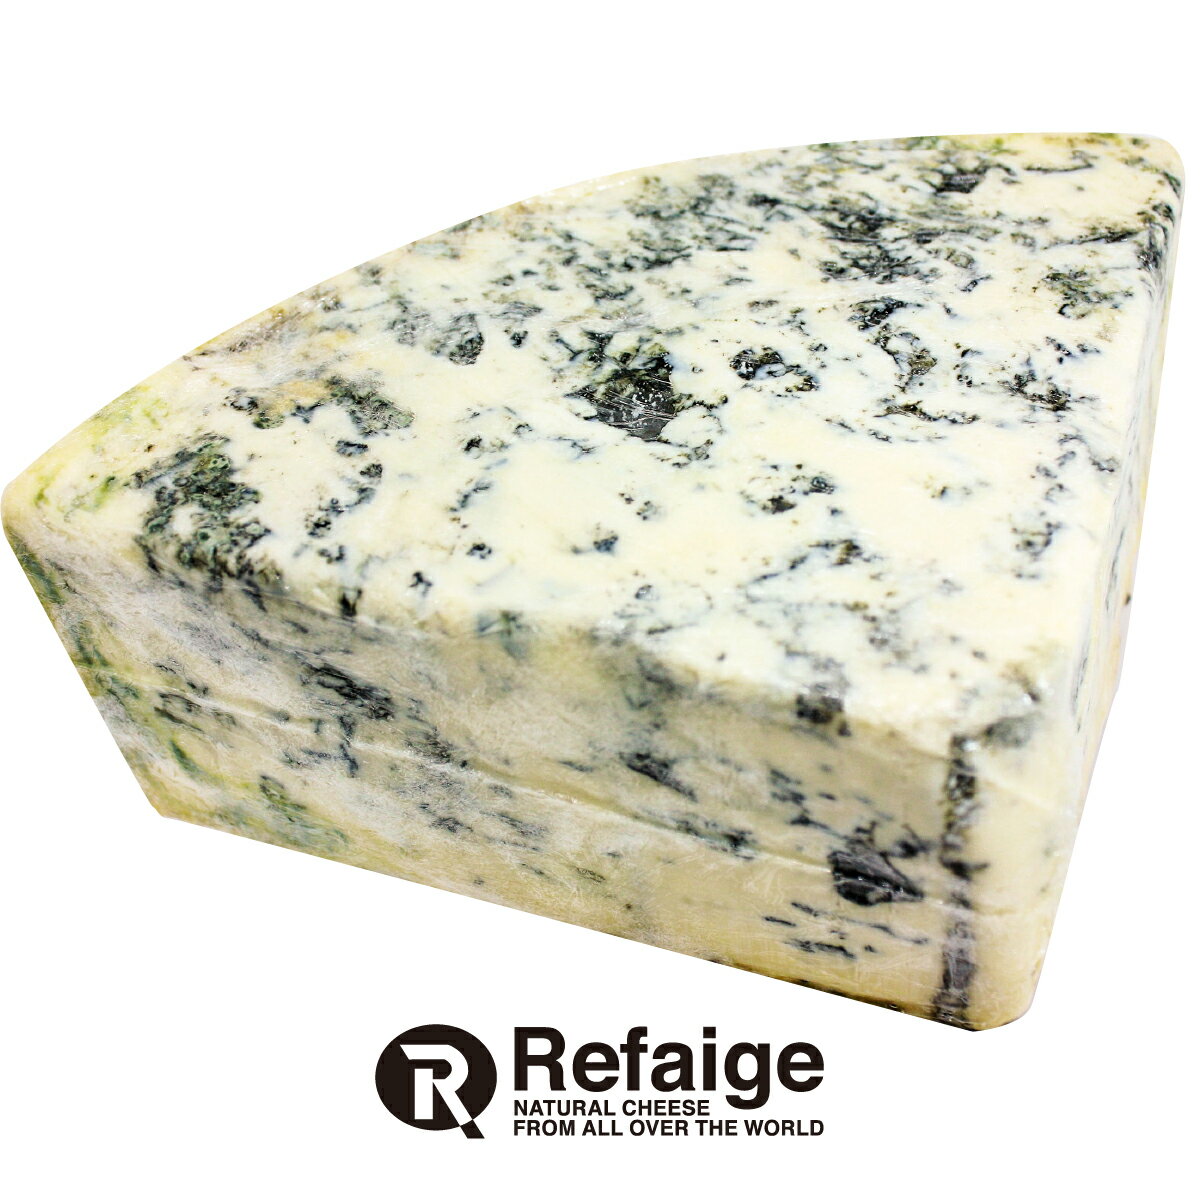 ゴルゴンゾーラ ピカンテ ゴルゴンゾーラ・ピカンテはイタリアの青かびチーズで、世界三大チーズの一つの辛口タイプです。イタリアのゴルゴンゾーラ村で作られたものしかその名を名乗れません。青かびが多く、ブルーチーズ特有のシャープでピリッとしたクセ...